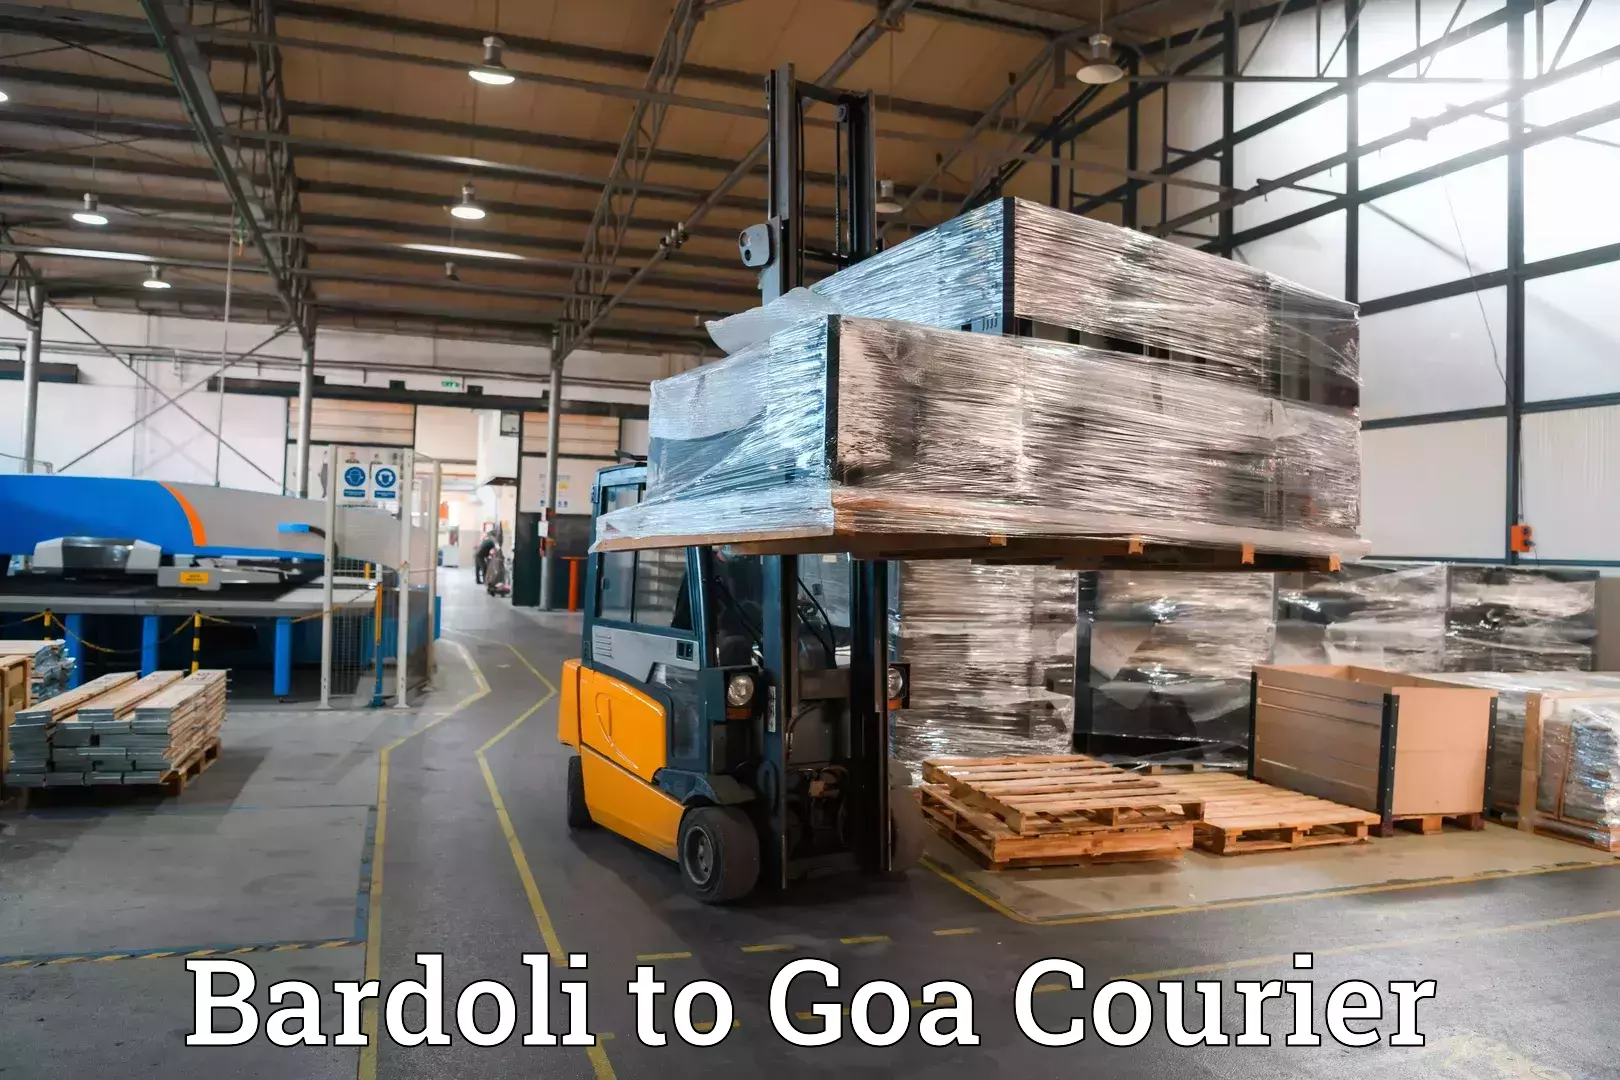 Luggage transport solutions Bardoli to Goa